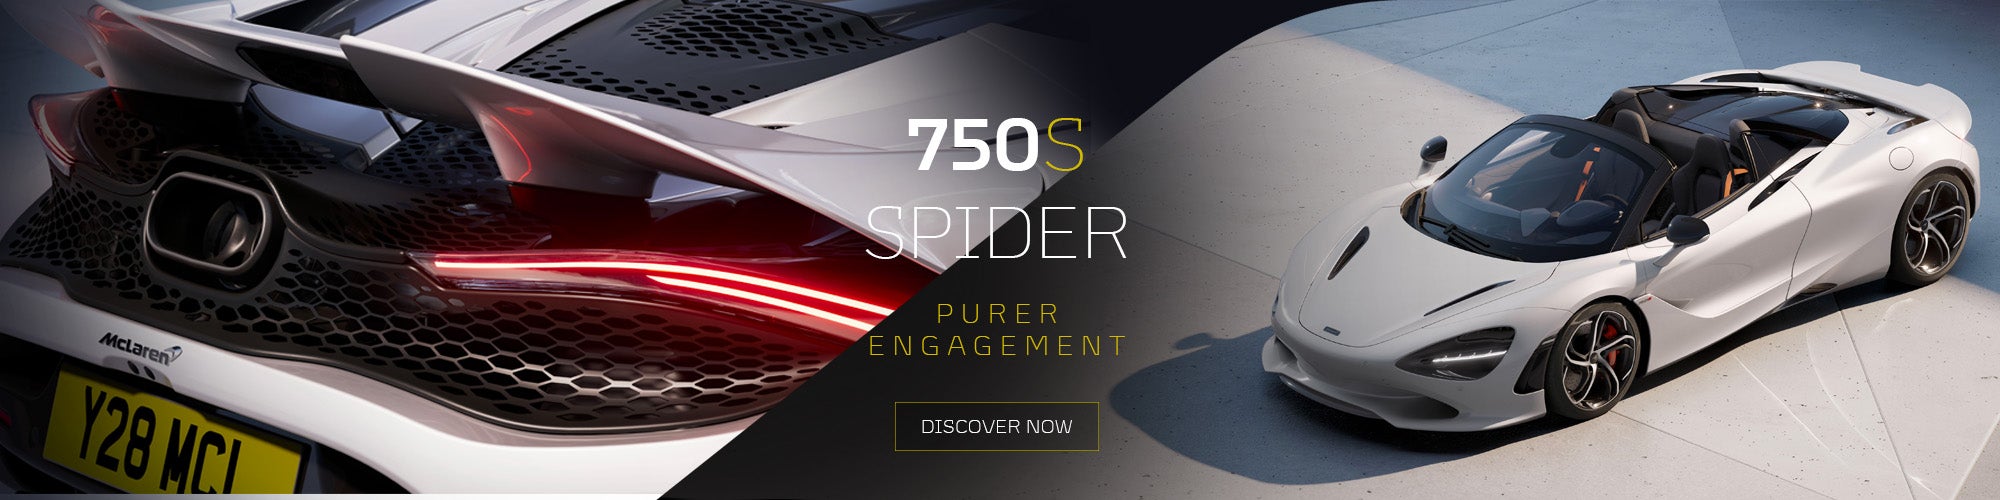 750s spider 